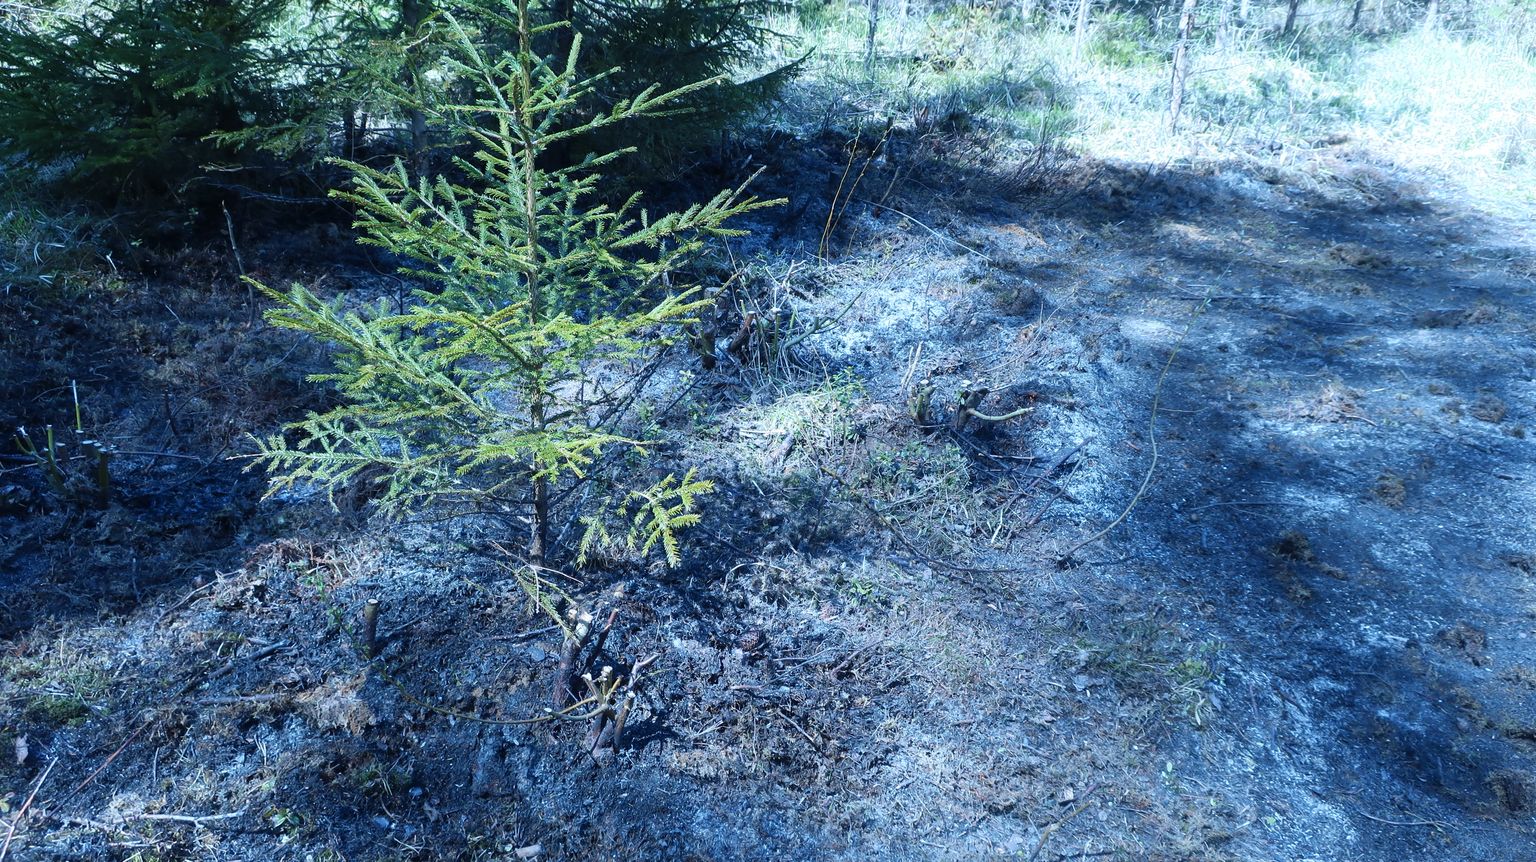 Et tuli ei leviks metsa, peavad lõkke tegemisel kindlasti käepärast olema esmased kustutusvahendid.